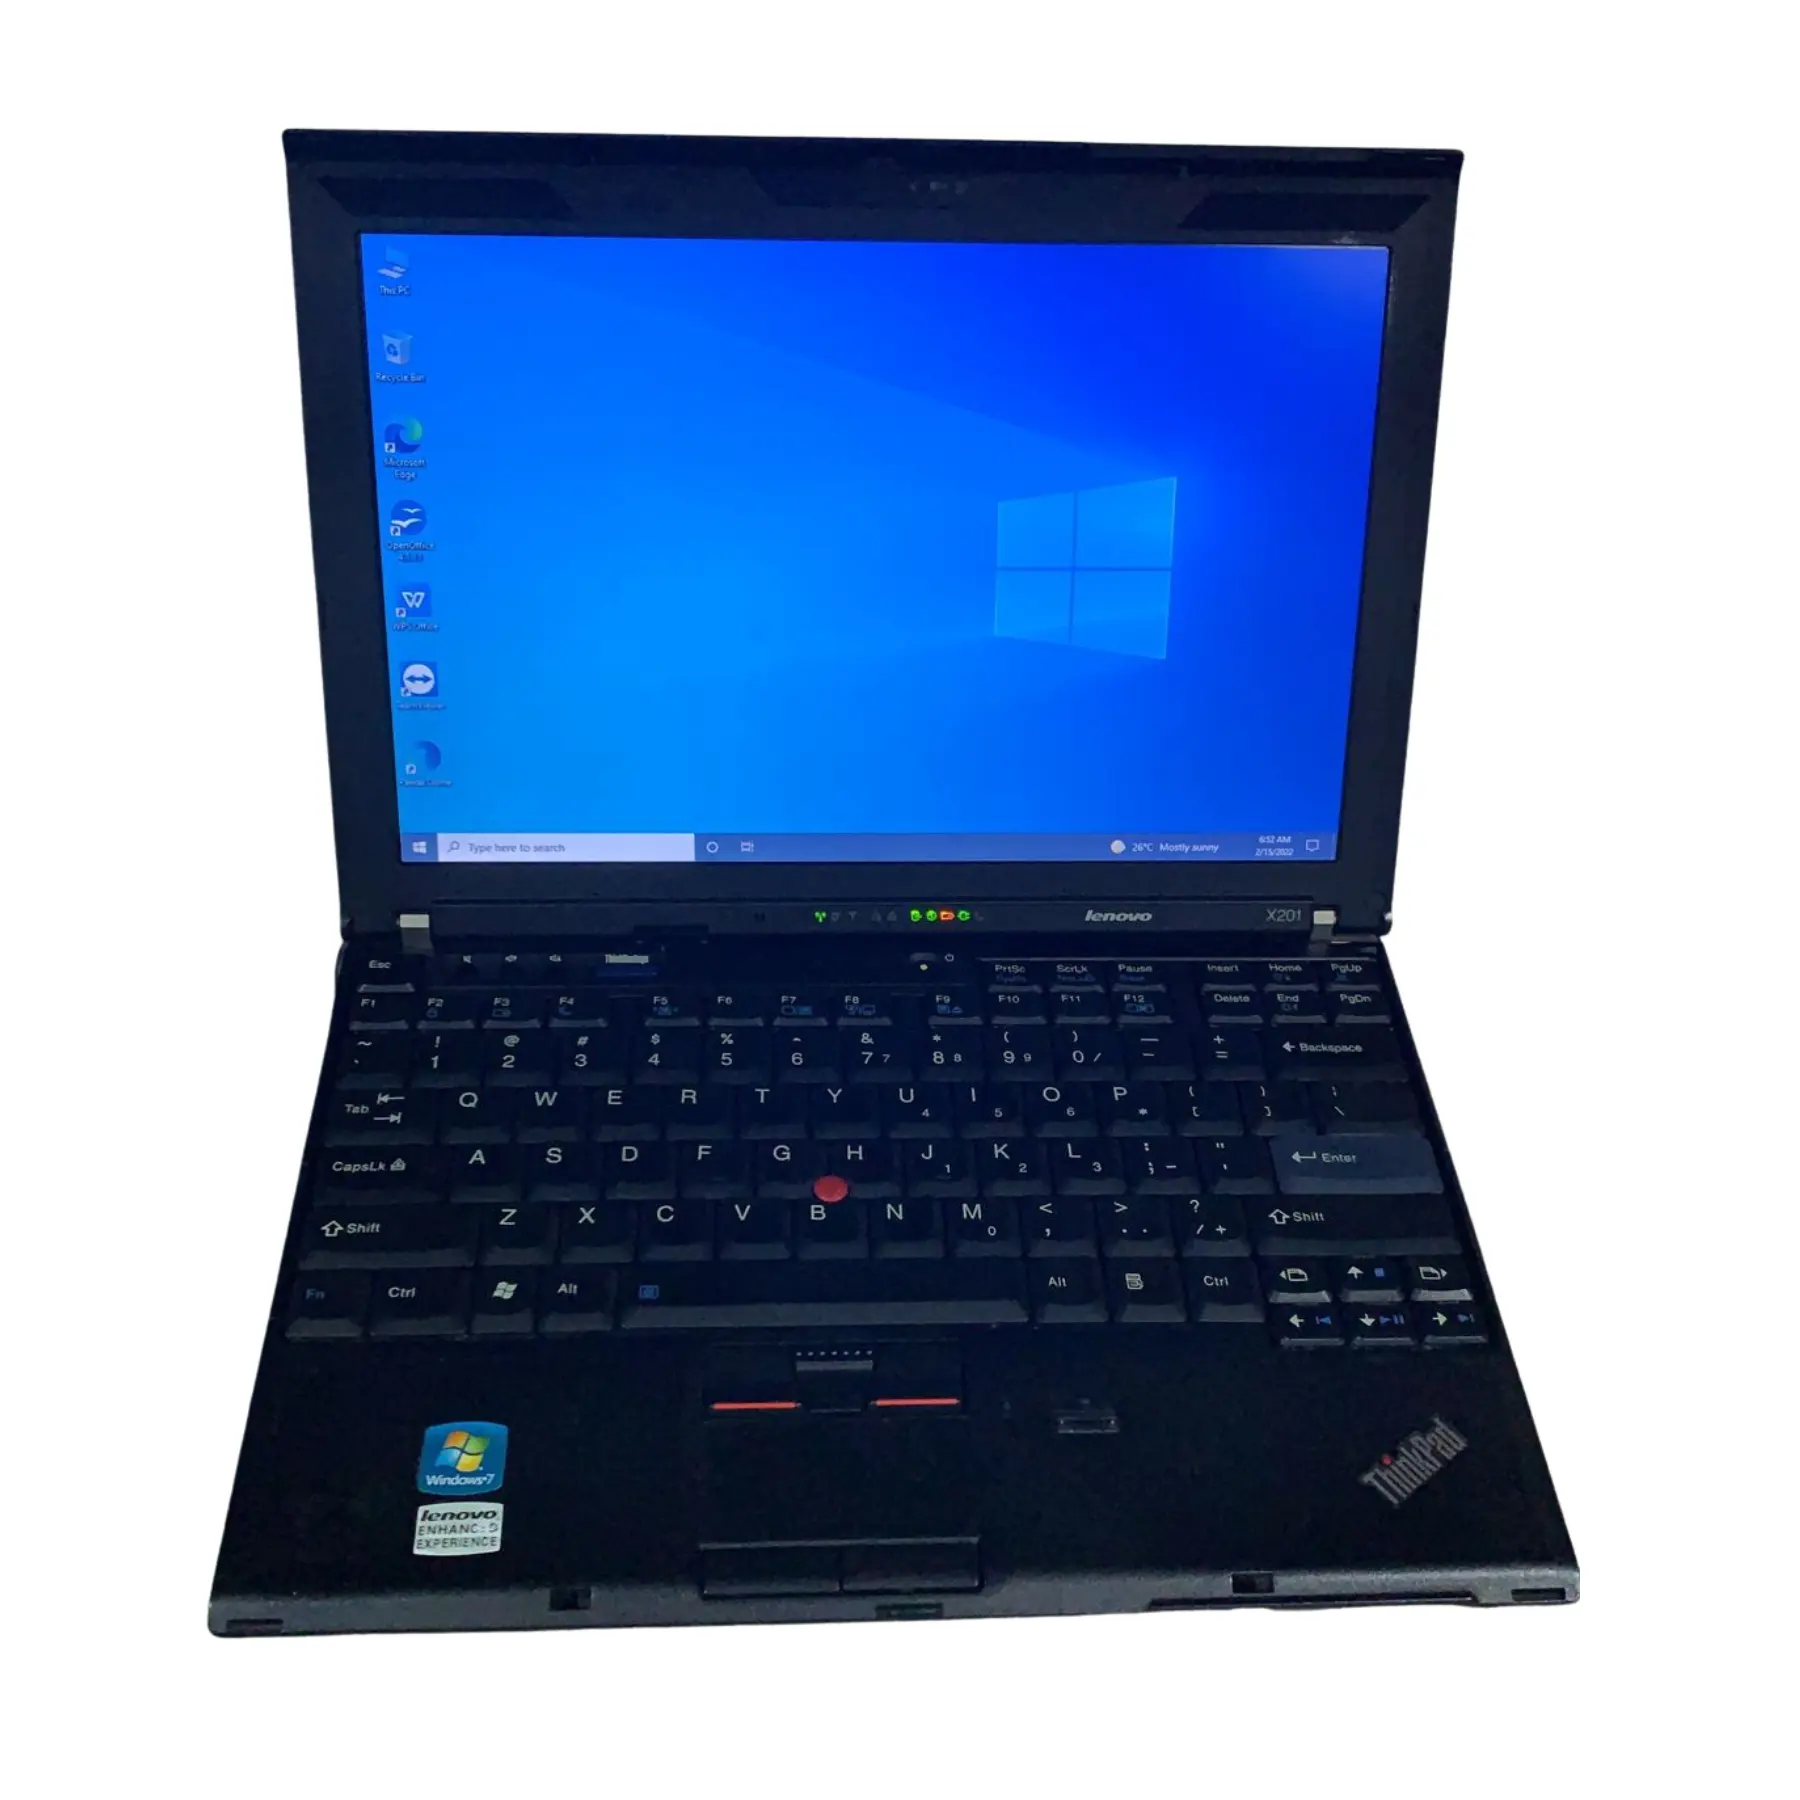 ความละเอียดสูงใช้แล็ปท็อป ThinkPad X201 HDD ฮาร์ดไดรฟ์ประเภท1280X800ความละเอียดการแสดงผลราคาต่ำจากประเทศมาเลเซีย